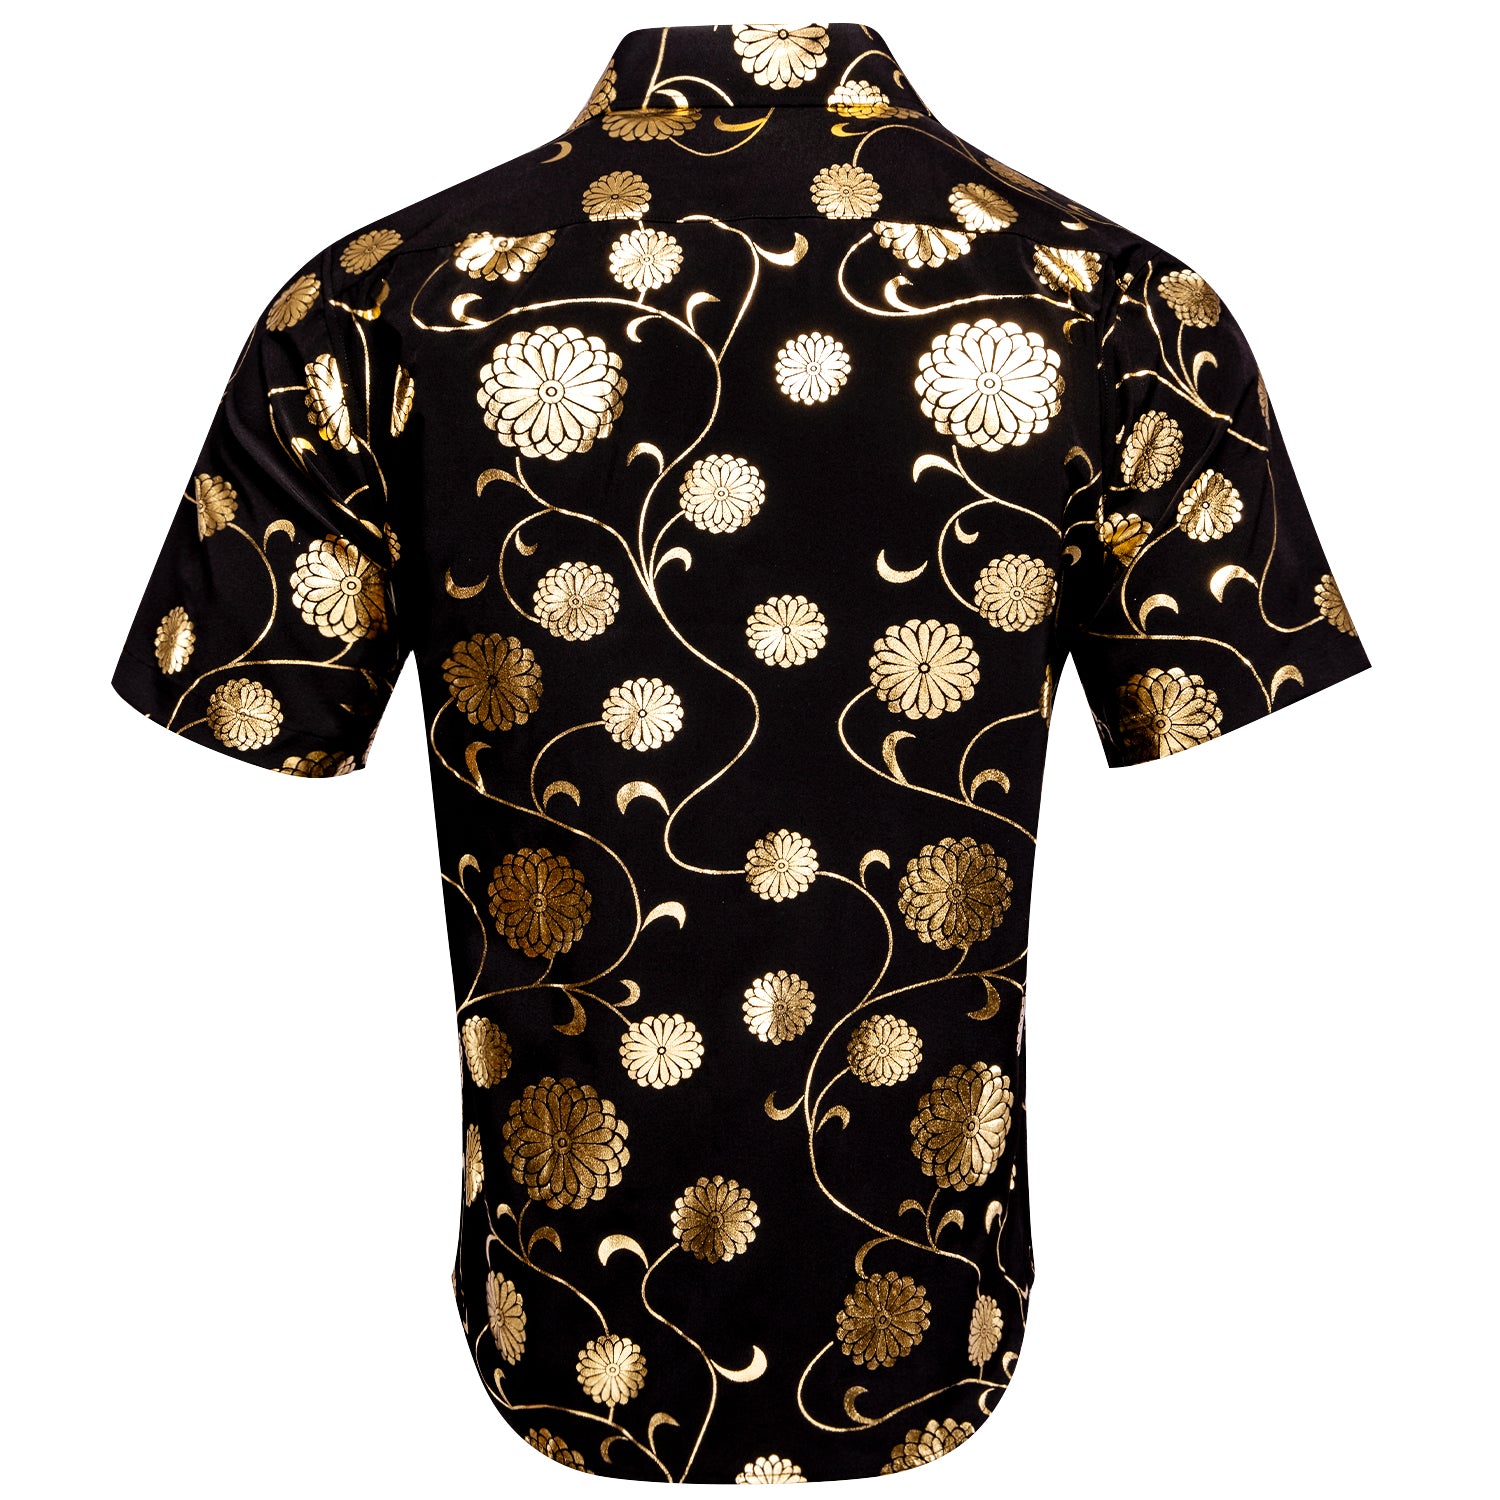 New Black Champagne Flower Men's Short Sleeve Shirt